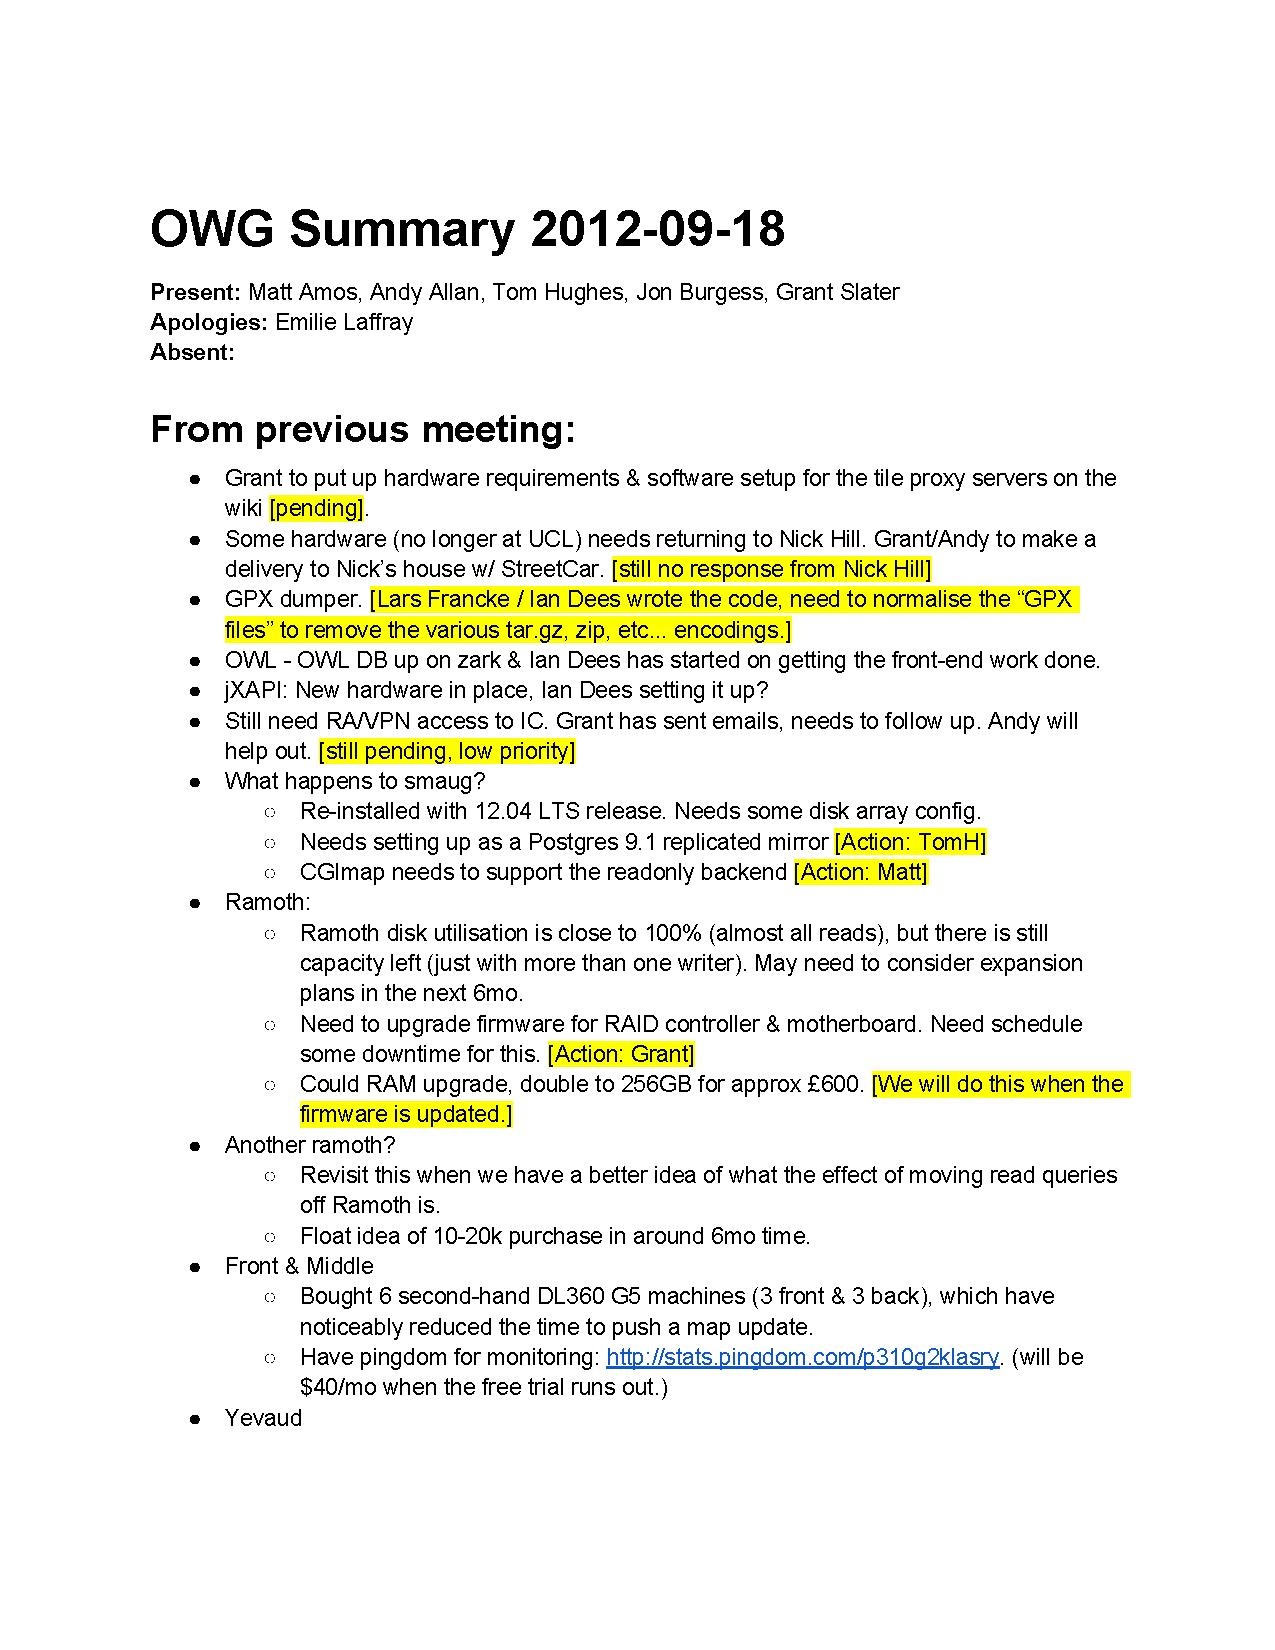 OWG Summary 2012-09-18.pdf